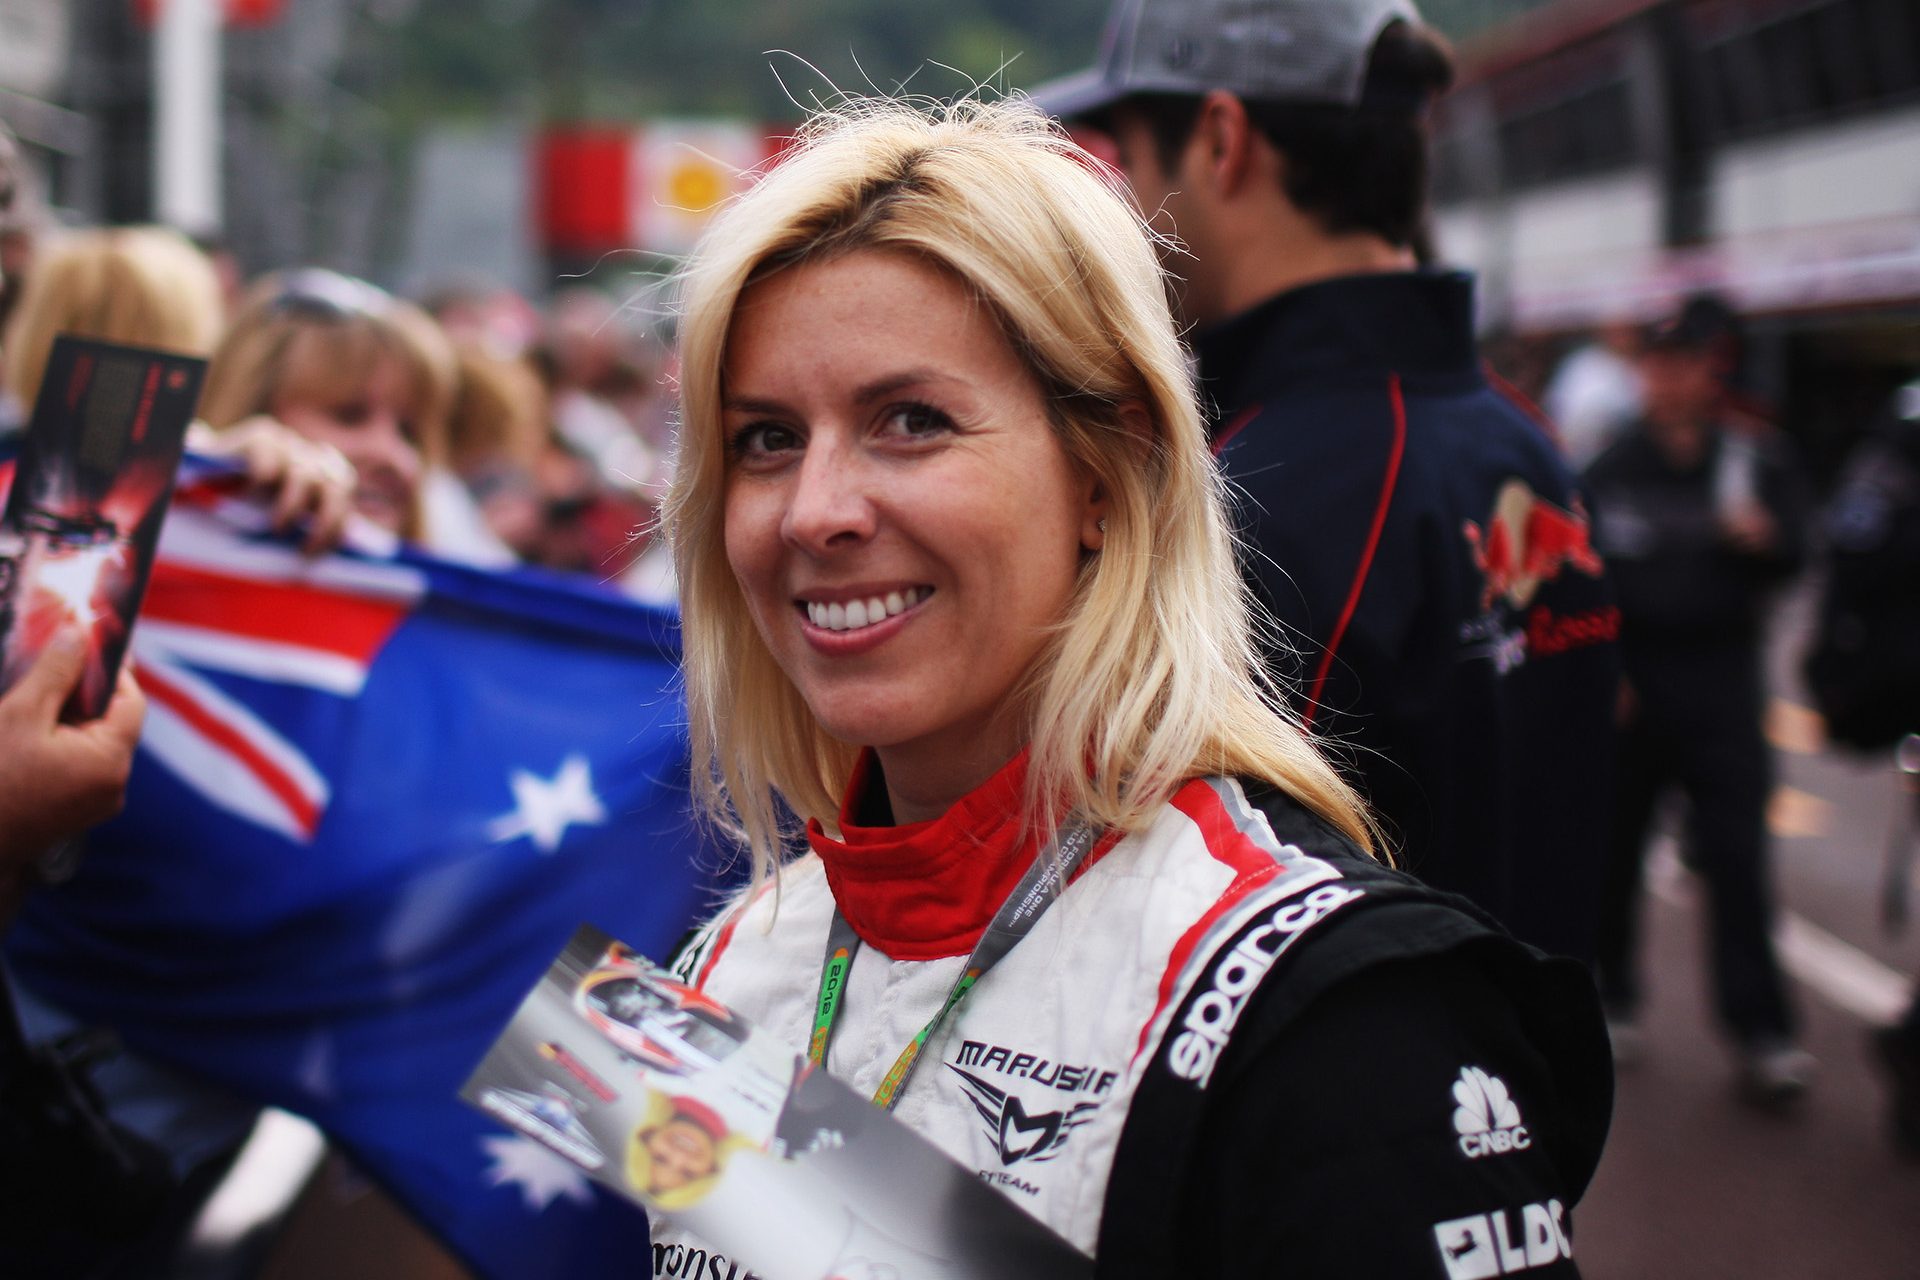 The tragic death of racing star María de Villota at 33